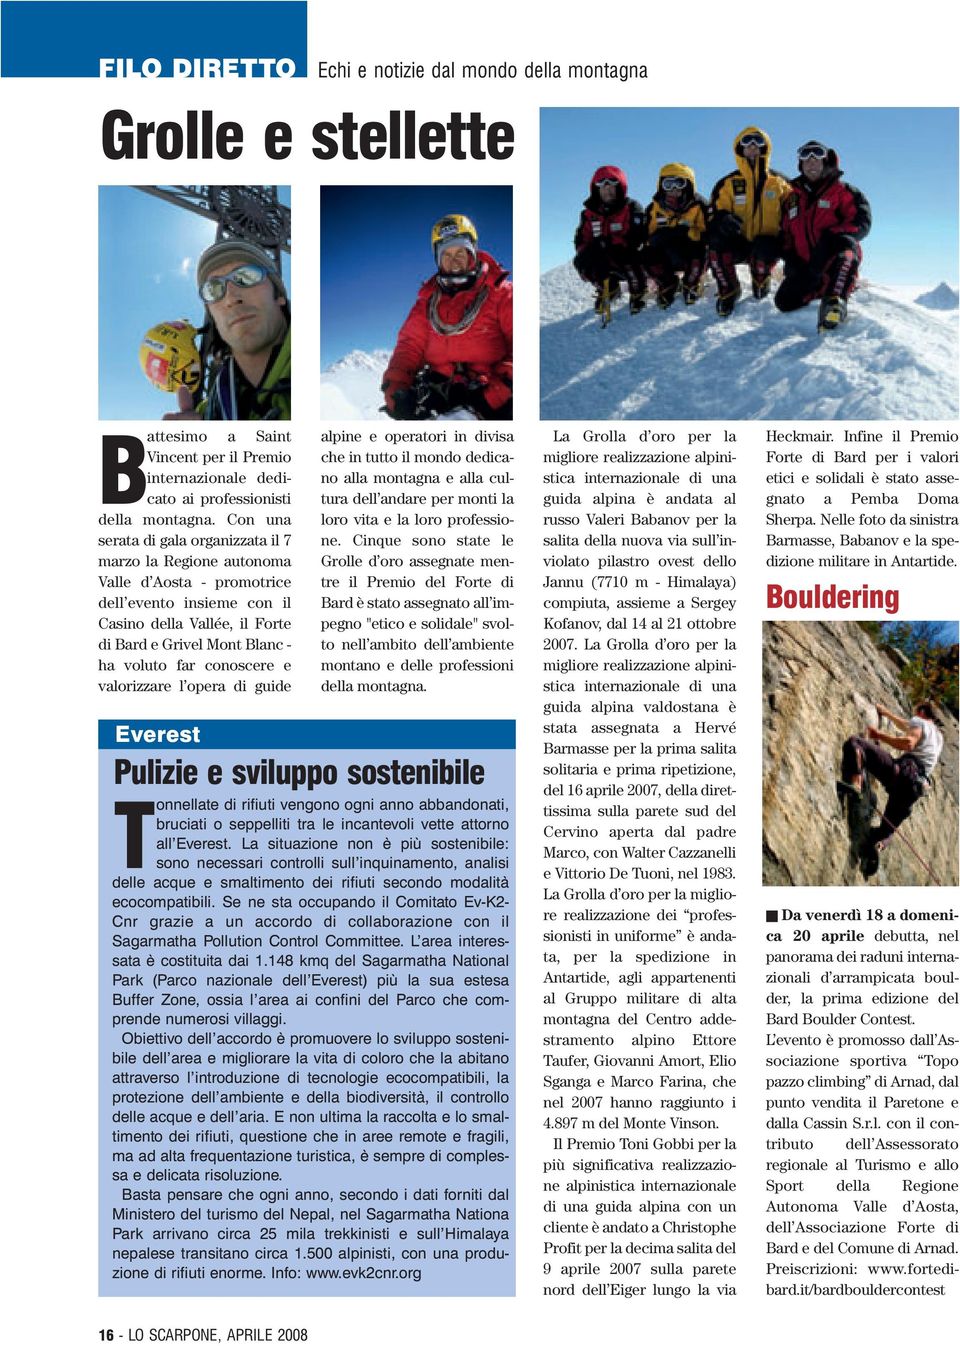 conoscere e valorizzare l opera di guide alpine e operatori in divisa che in tutto il mondo dedicano alla montagna e alla cultura dell andare per monti la loro vita e la loro professione.